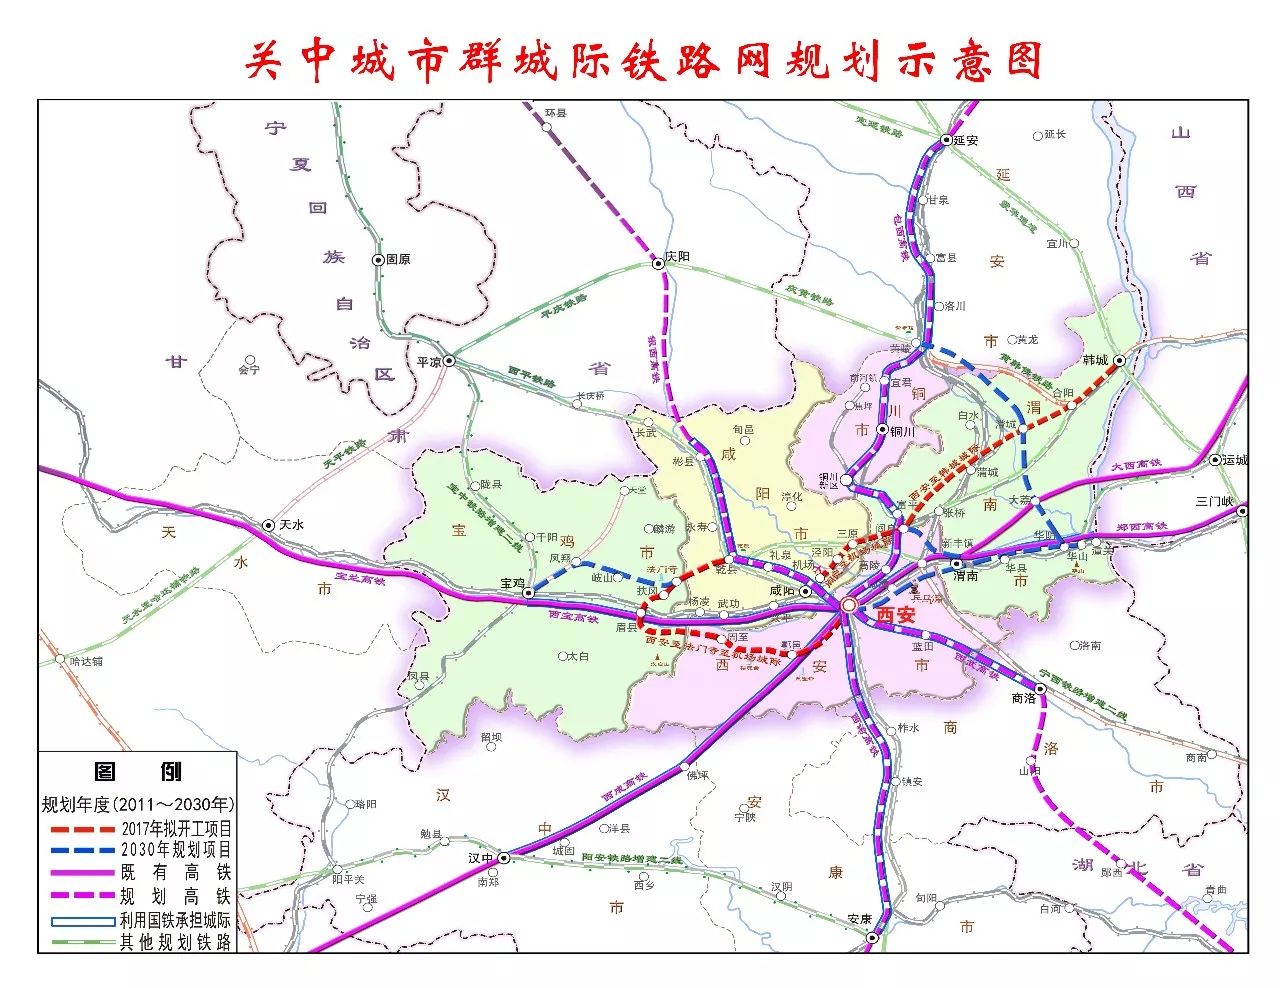 陕西四条城际铁路开工,西安一小时交通圈形成,陕西交通枢纽省份地位